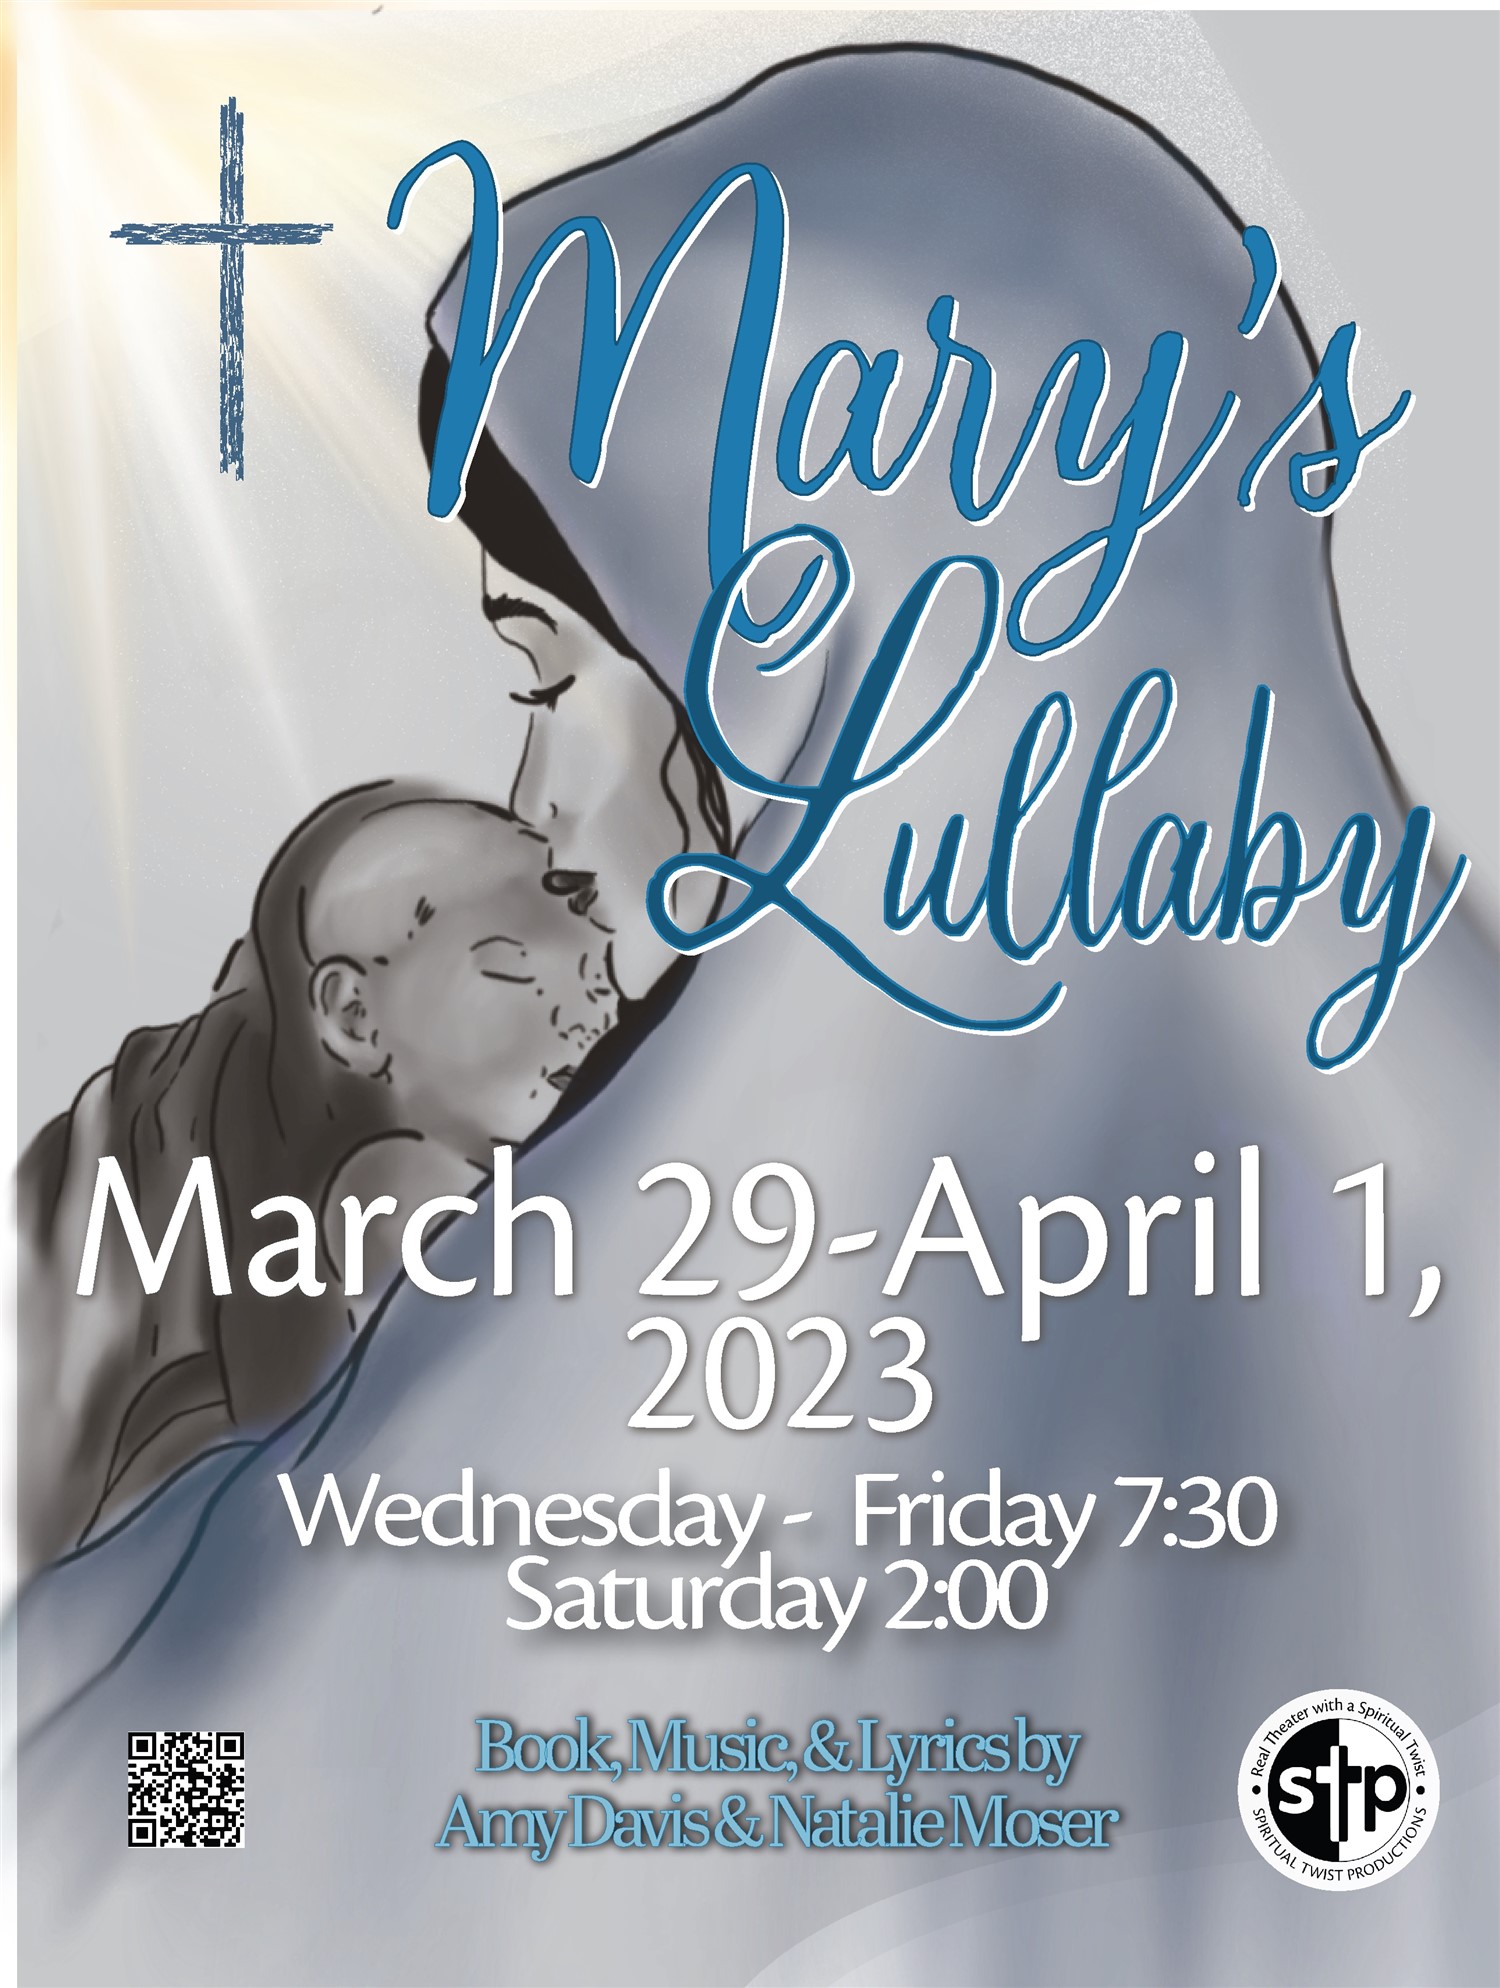 Mary's Lullaby Thursday, March 30, 2023 @ 7:30 PM on mars 30, 19:30@Spiritual Twist Productions - Choisissez un siège,Achetez des billets et obtenez des informations surSpiritual Twist Productions tickets.spiritualtwist.com